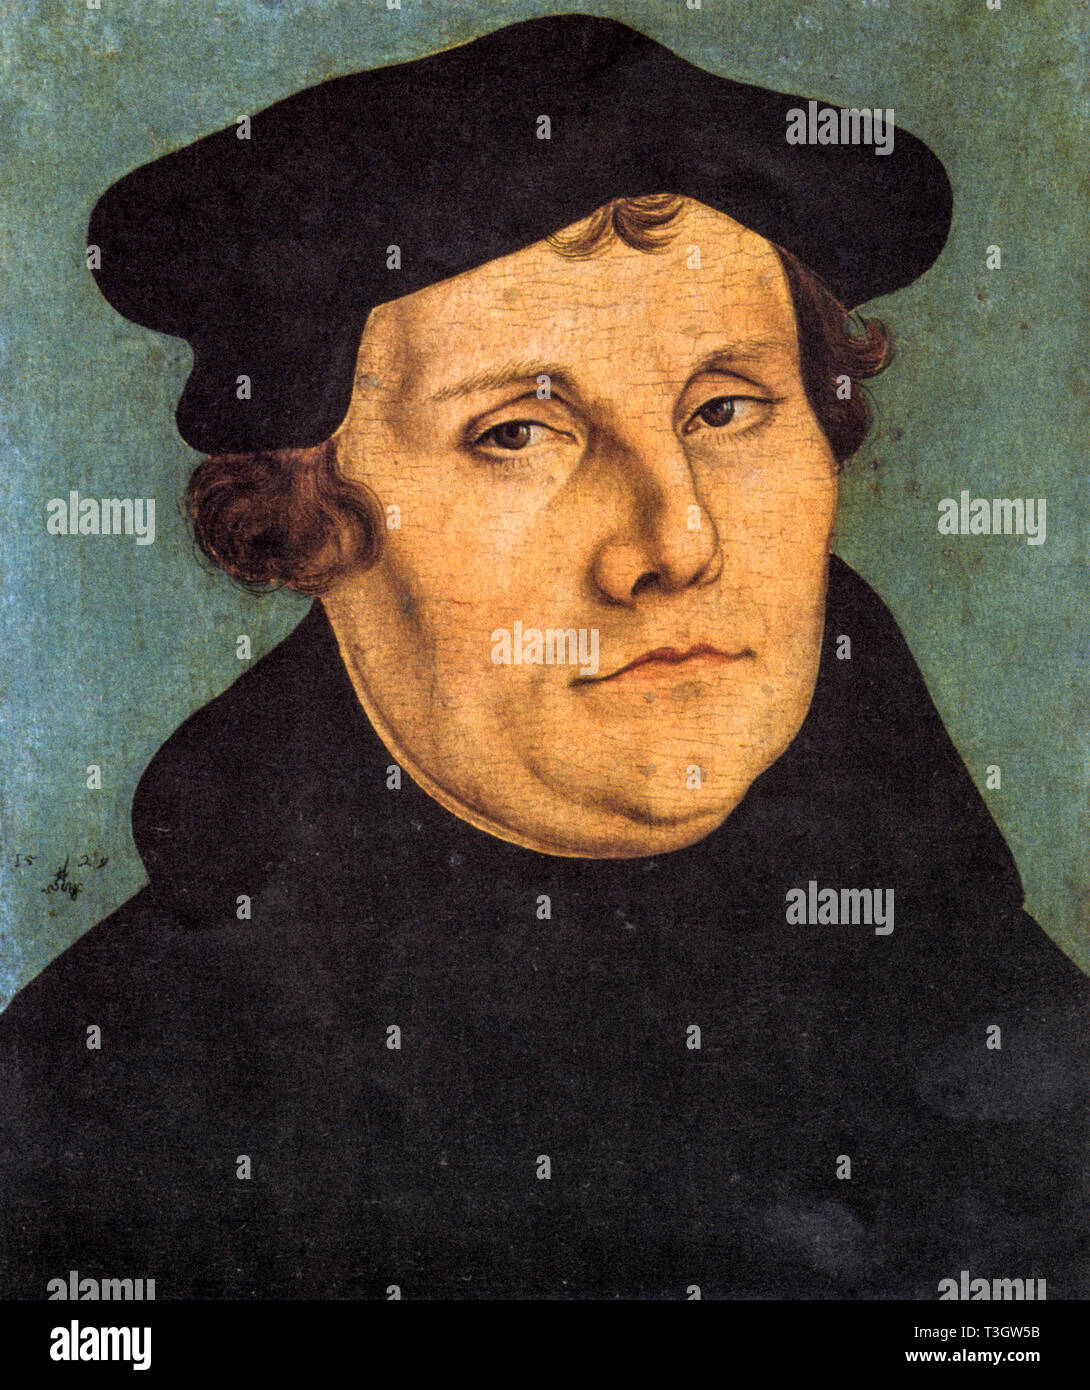 Retrato de Martín Lutero por Lucas Cranach 1529 ((Eisleben, 10 de noviembre de 1483 [1] - Eisleben, el 18 de febrero de 1546) - fue un teólogo alemán que inició la Reforma Protestante. La confesión cristiana sobre la base de su doctrina teológica es llamado el luteranismo Foto de stock